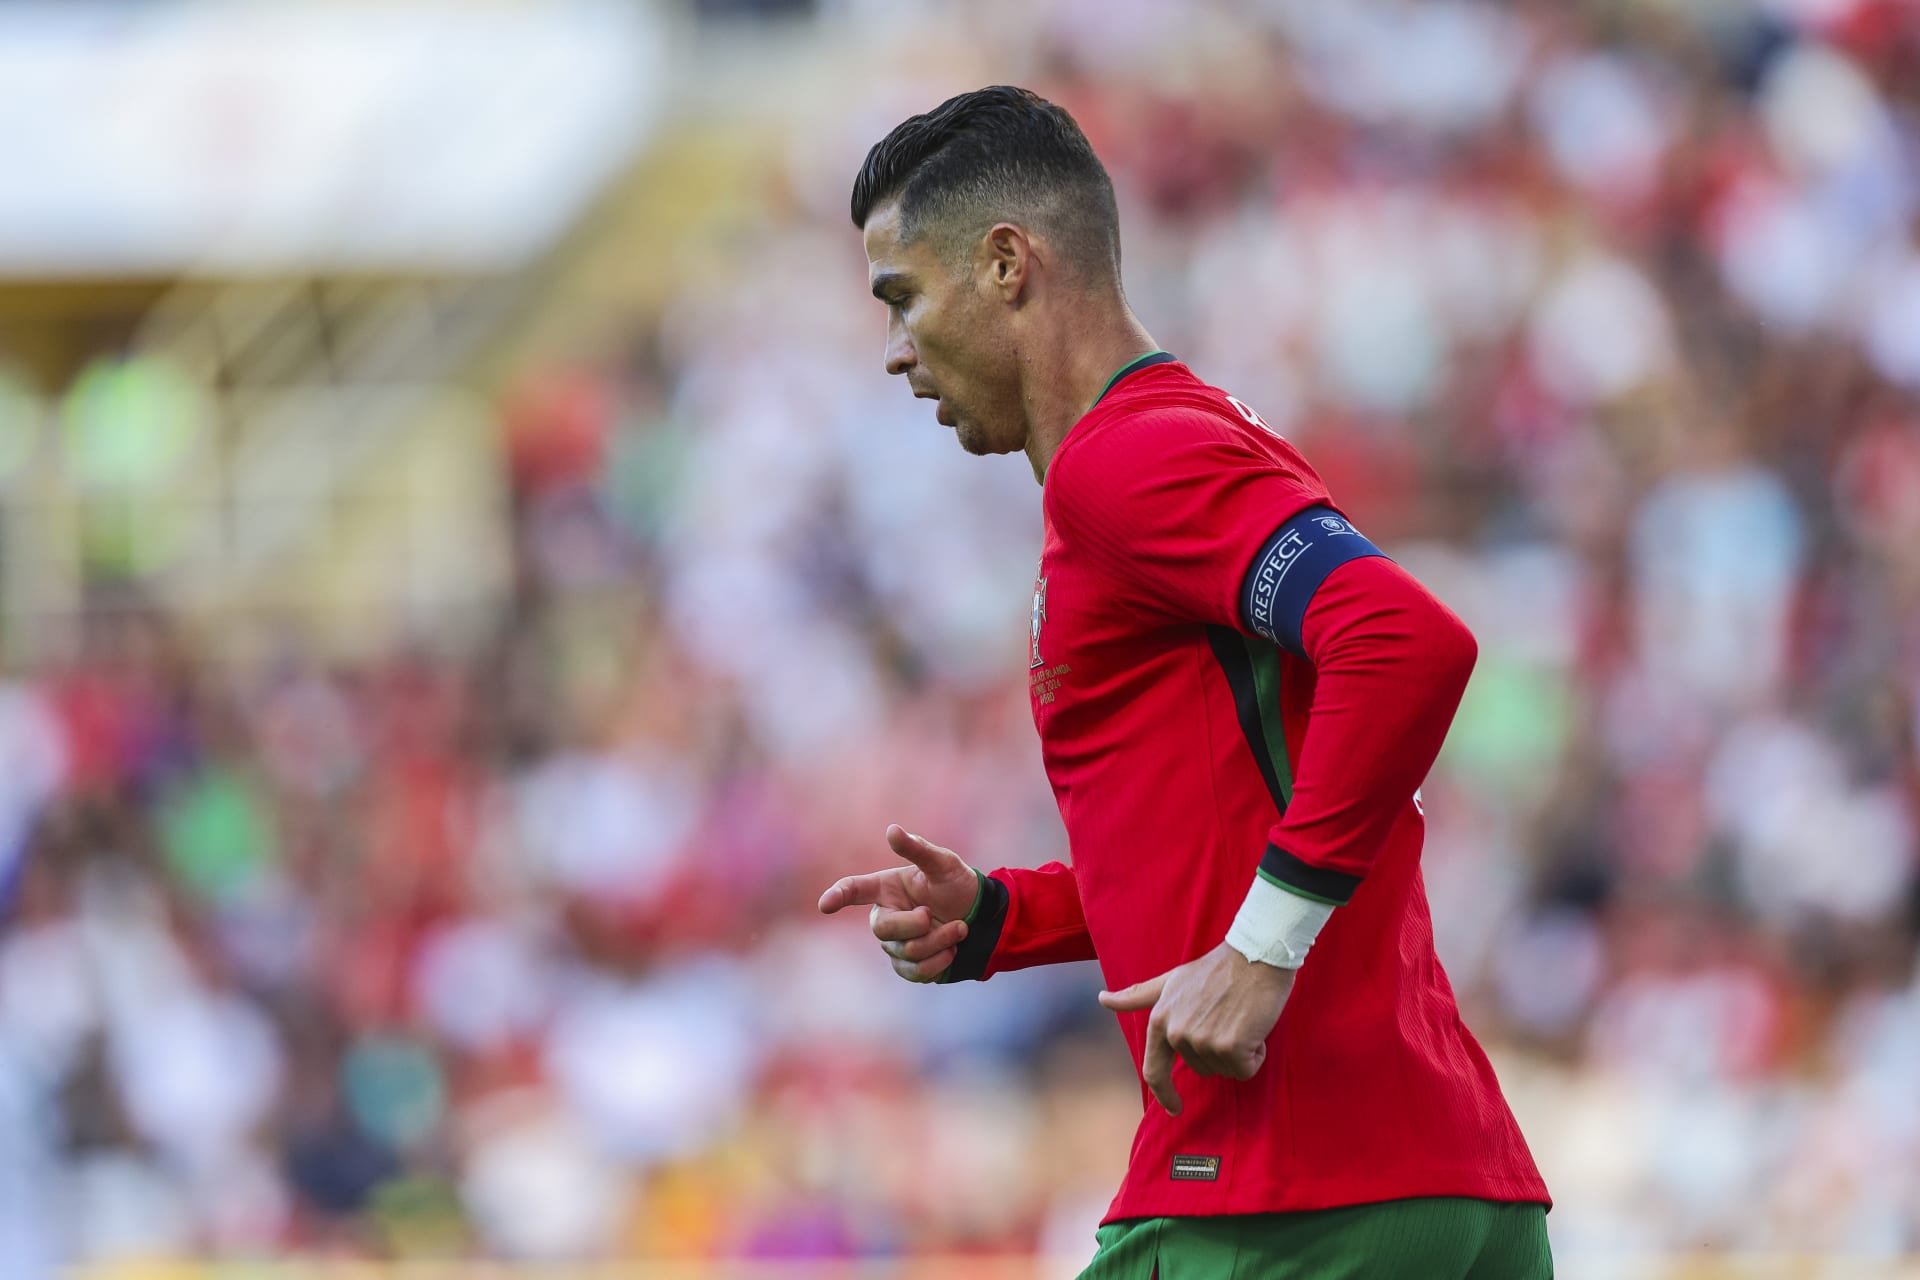 رونالدو يخطف الأنظار بهذا التصرف خلال مباراة البرتغال وأيرلندا